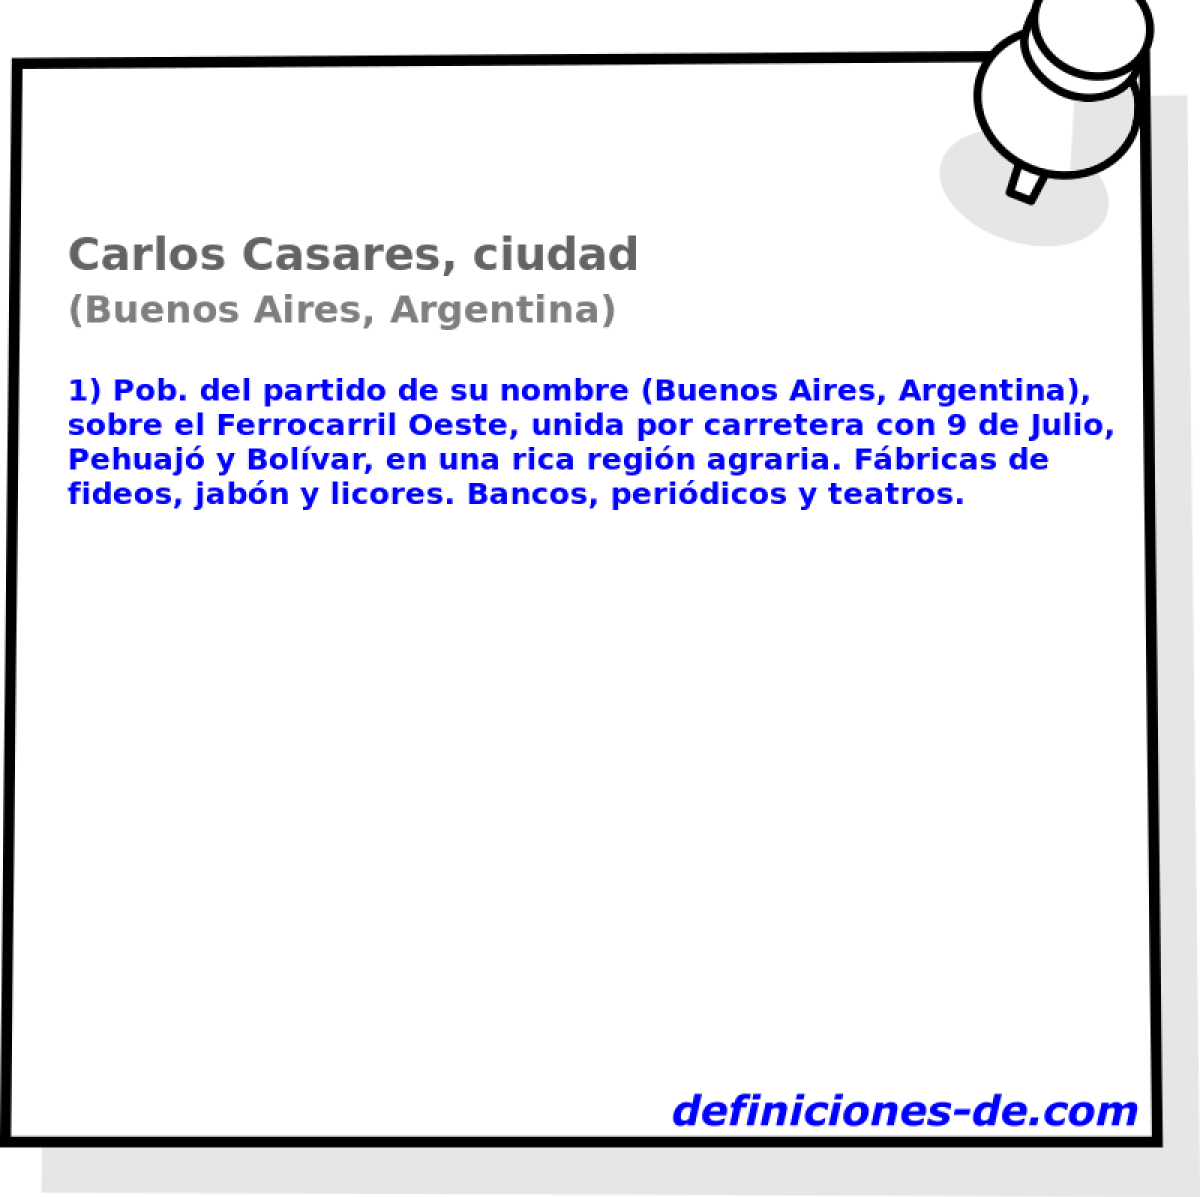 Carlos Casares, ciudad (Buenos Aires, Argentina)